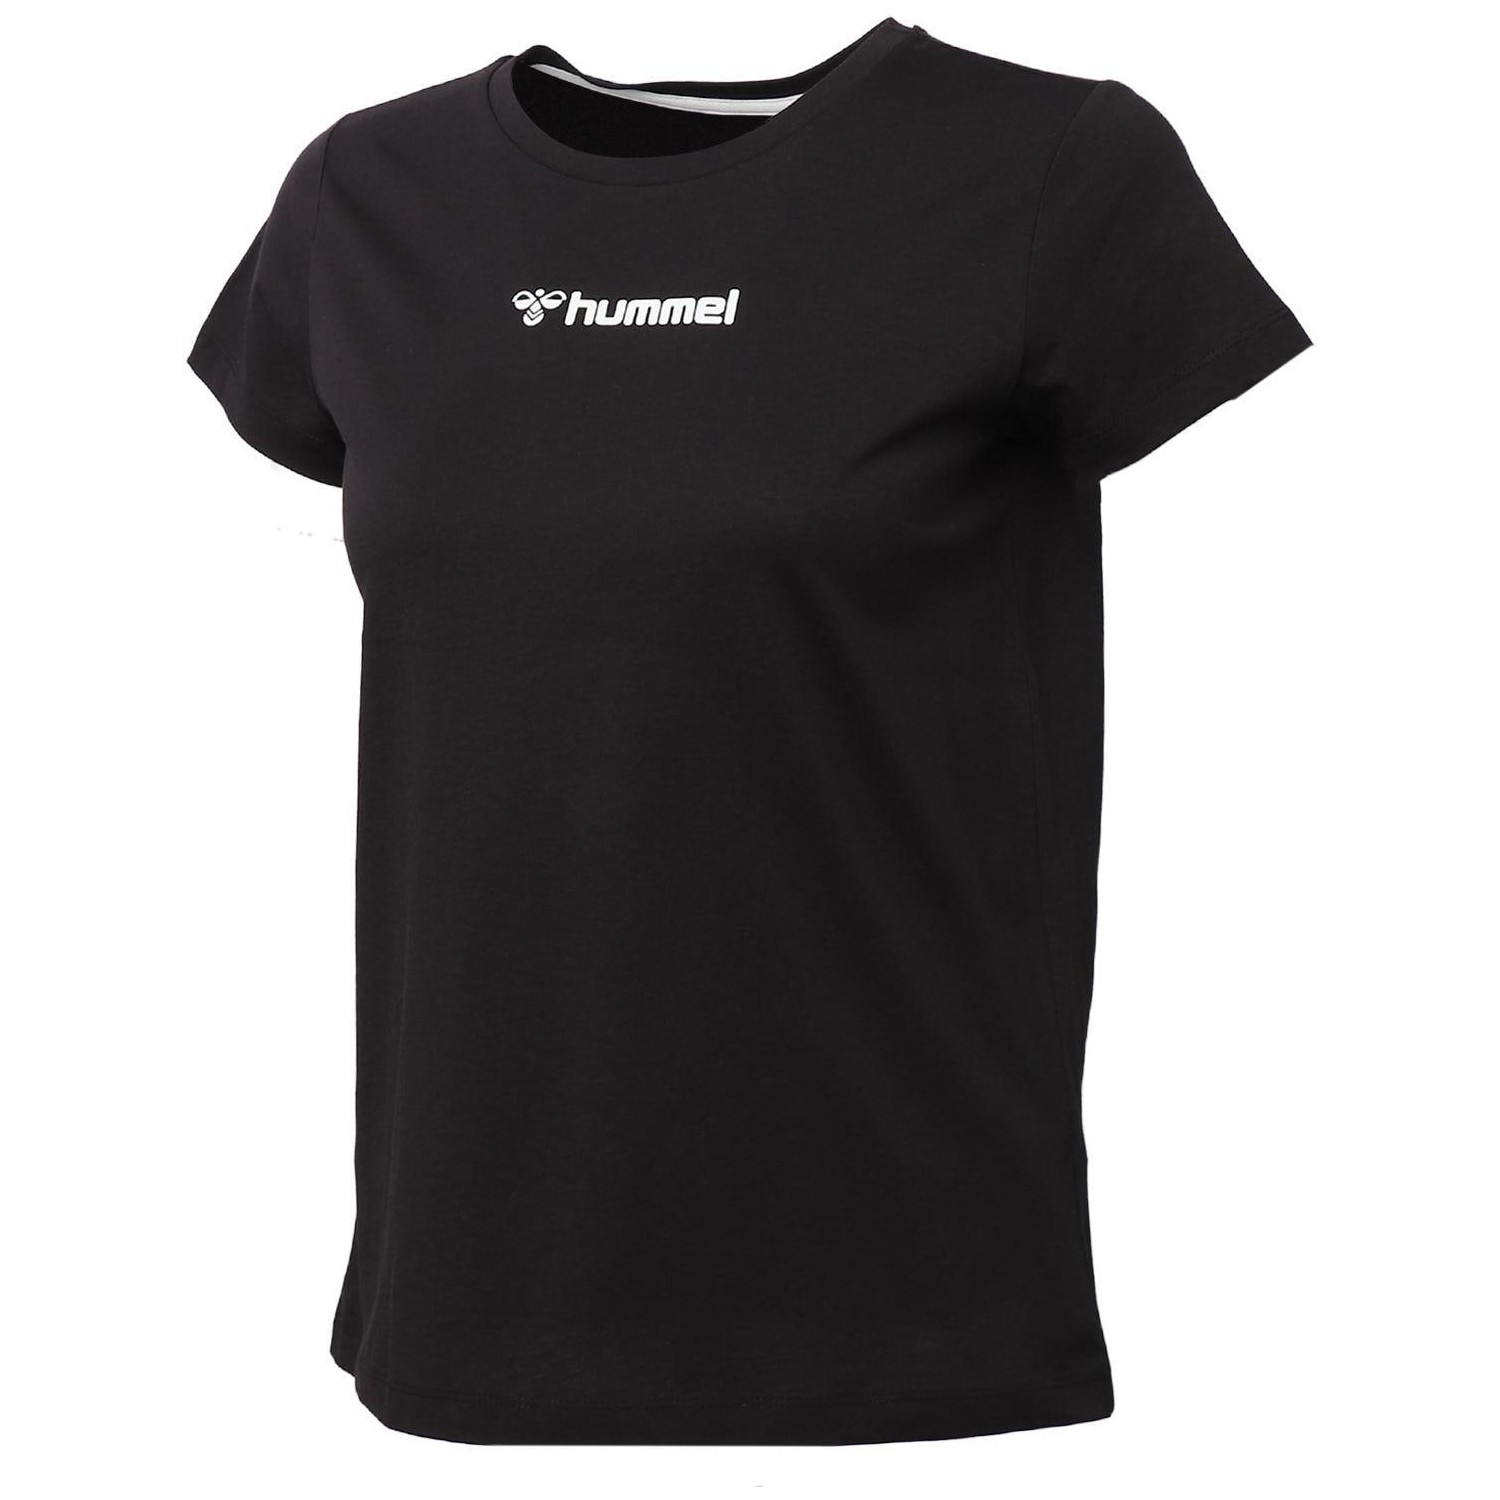 Hummel Flora Kadın T-Shirt S/s Fiyatı - Taksit